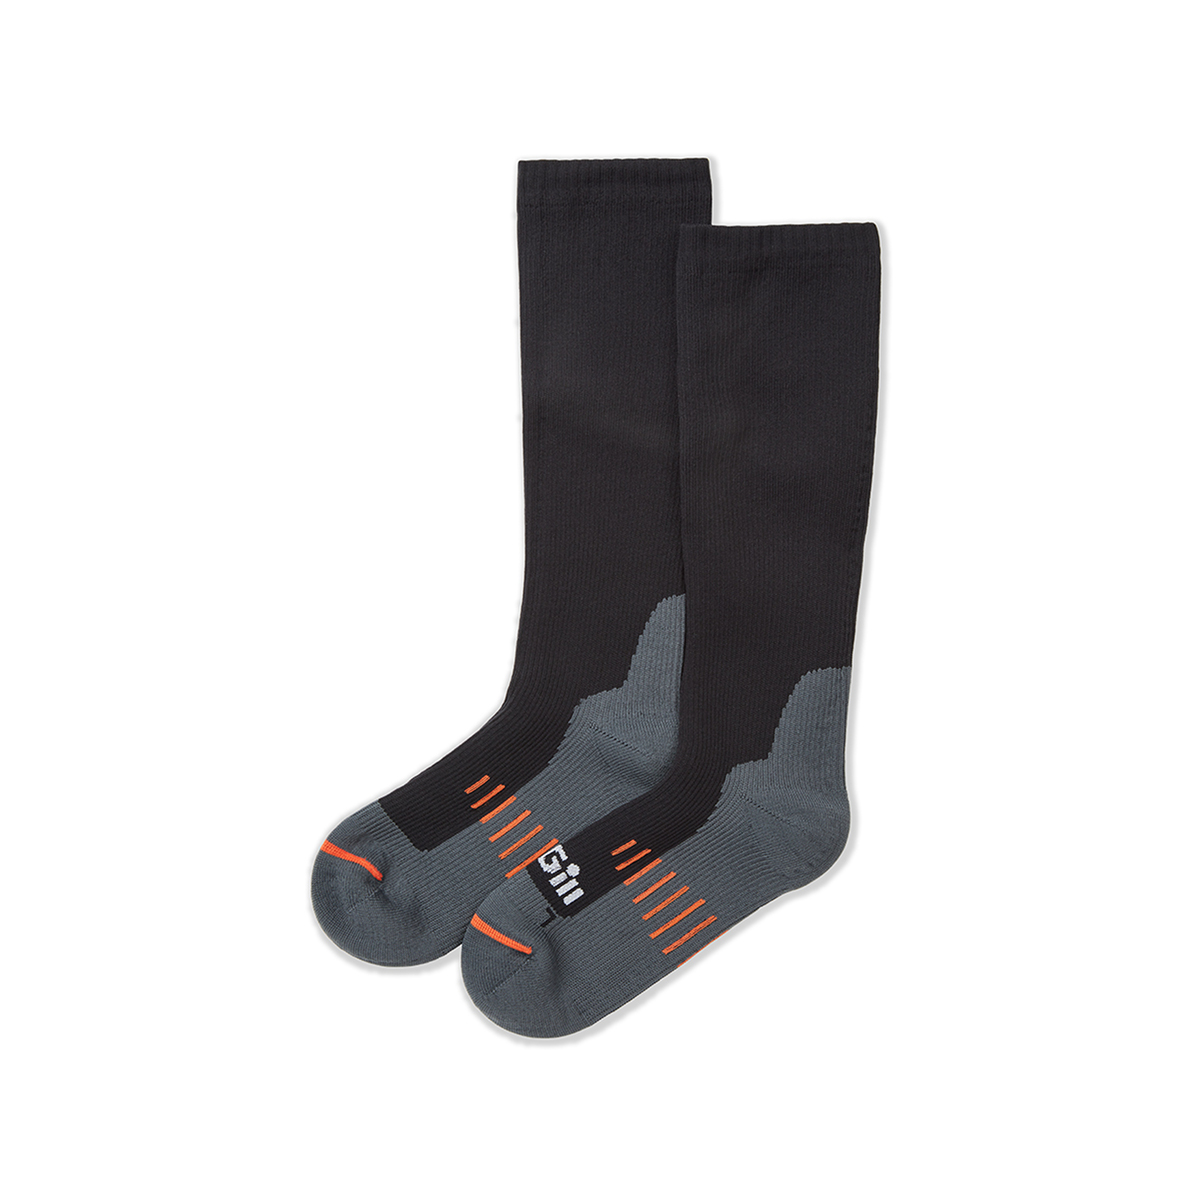 Gill chaussettes pour bottes, imperméables - graphite, taille L